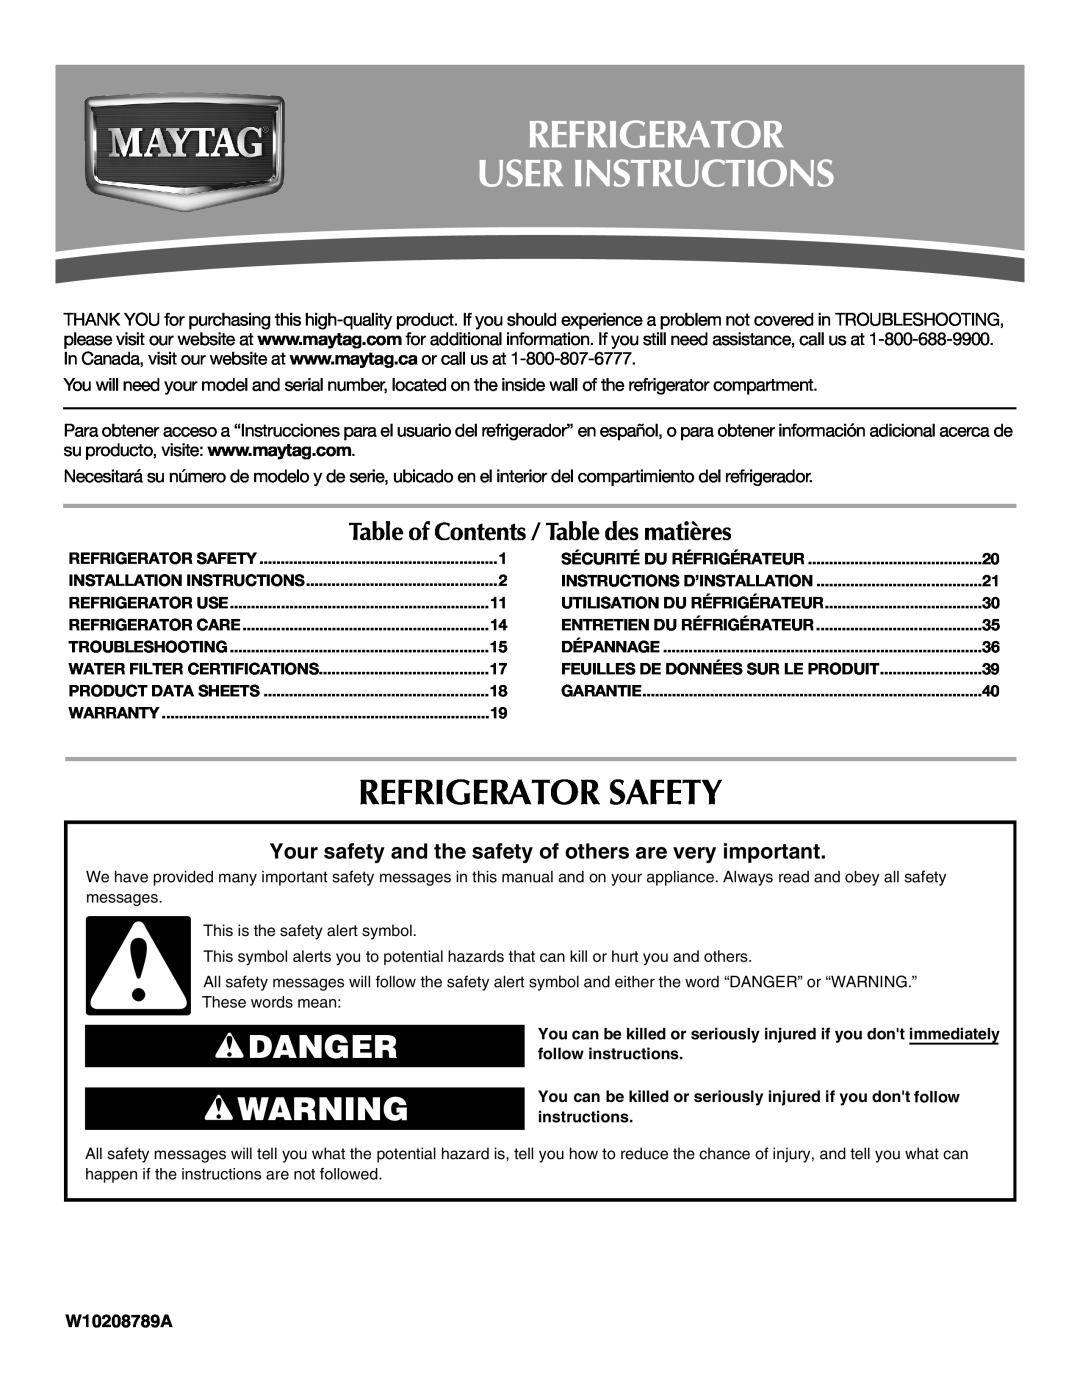 Maytag W10208789A, W10208790A installation instructions Refrigerator User Instructions, Refrigerator Safety, Danger 